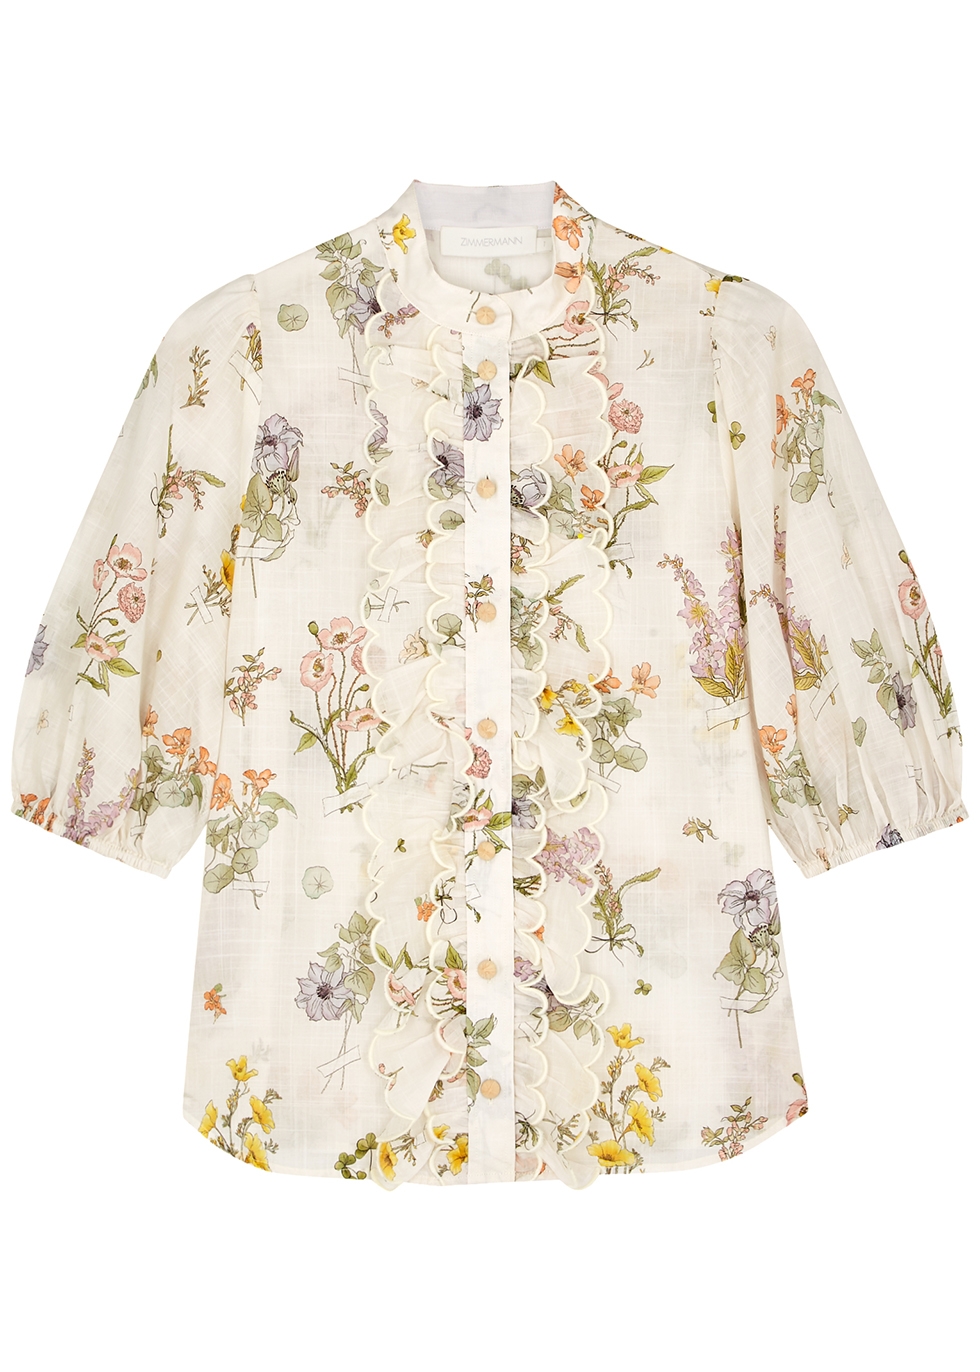 Zimmermann Jeannie floral-print cotton blouse - Harvey Nichols